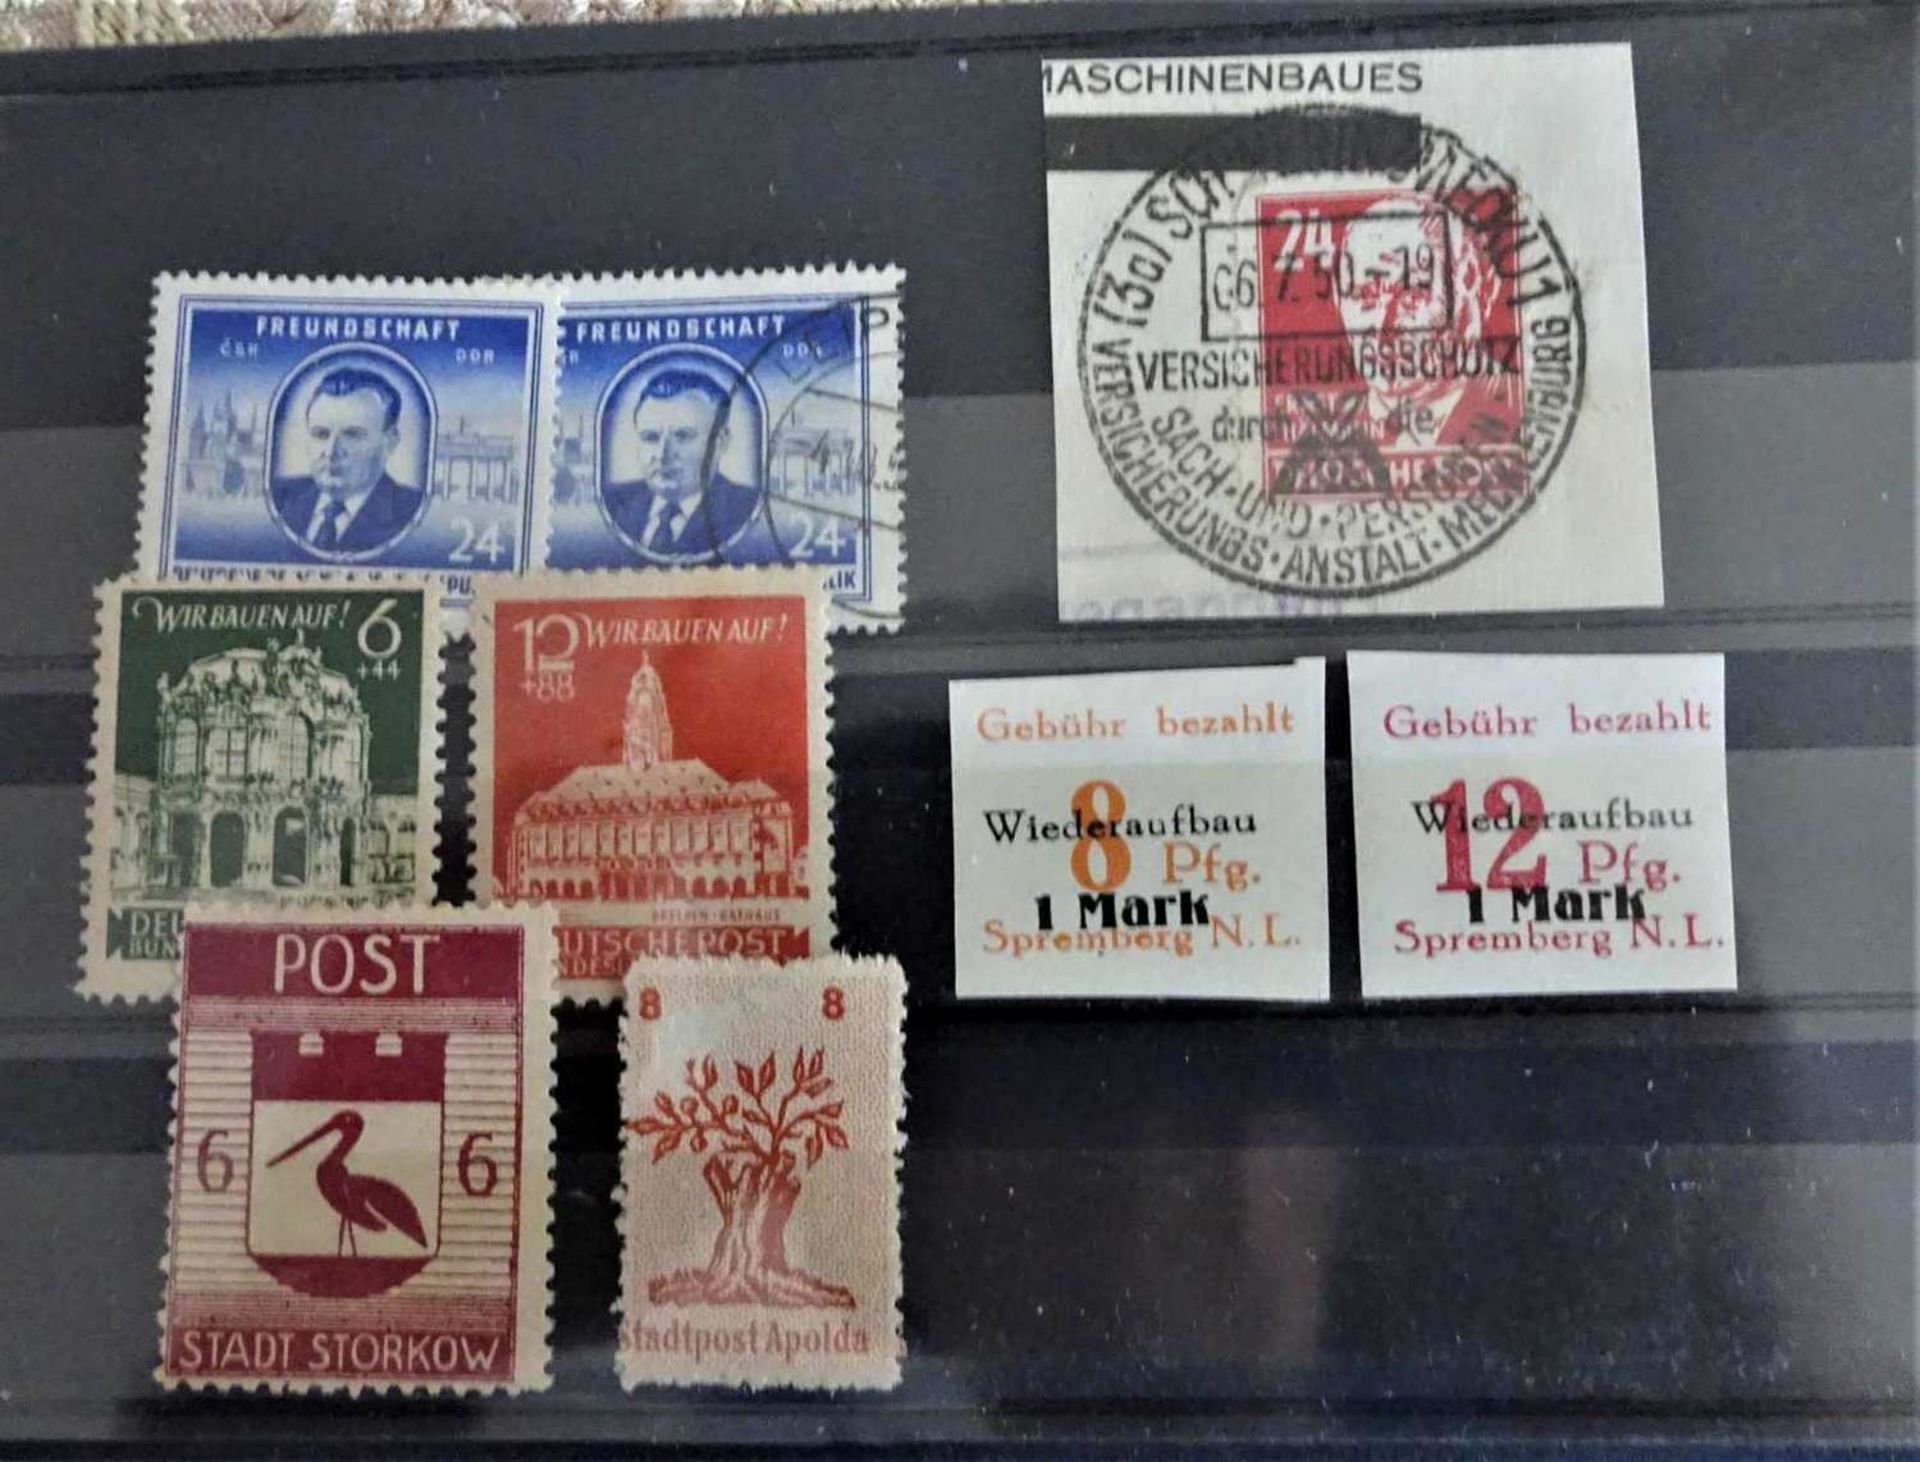 kleines Lot Steckkarten deutsche Gebiete nach 1945, z.B. BRD, DDR, etc. Bitte besichtigen!small - Bild 3 aus 3